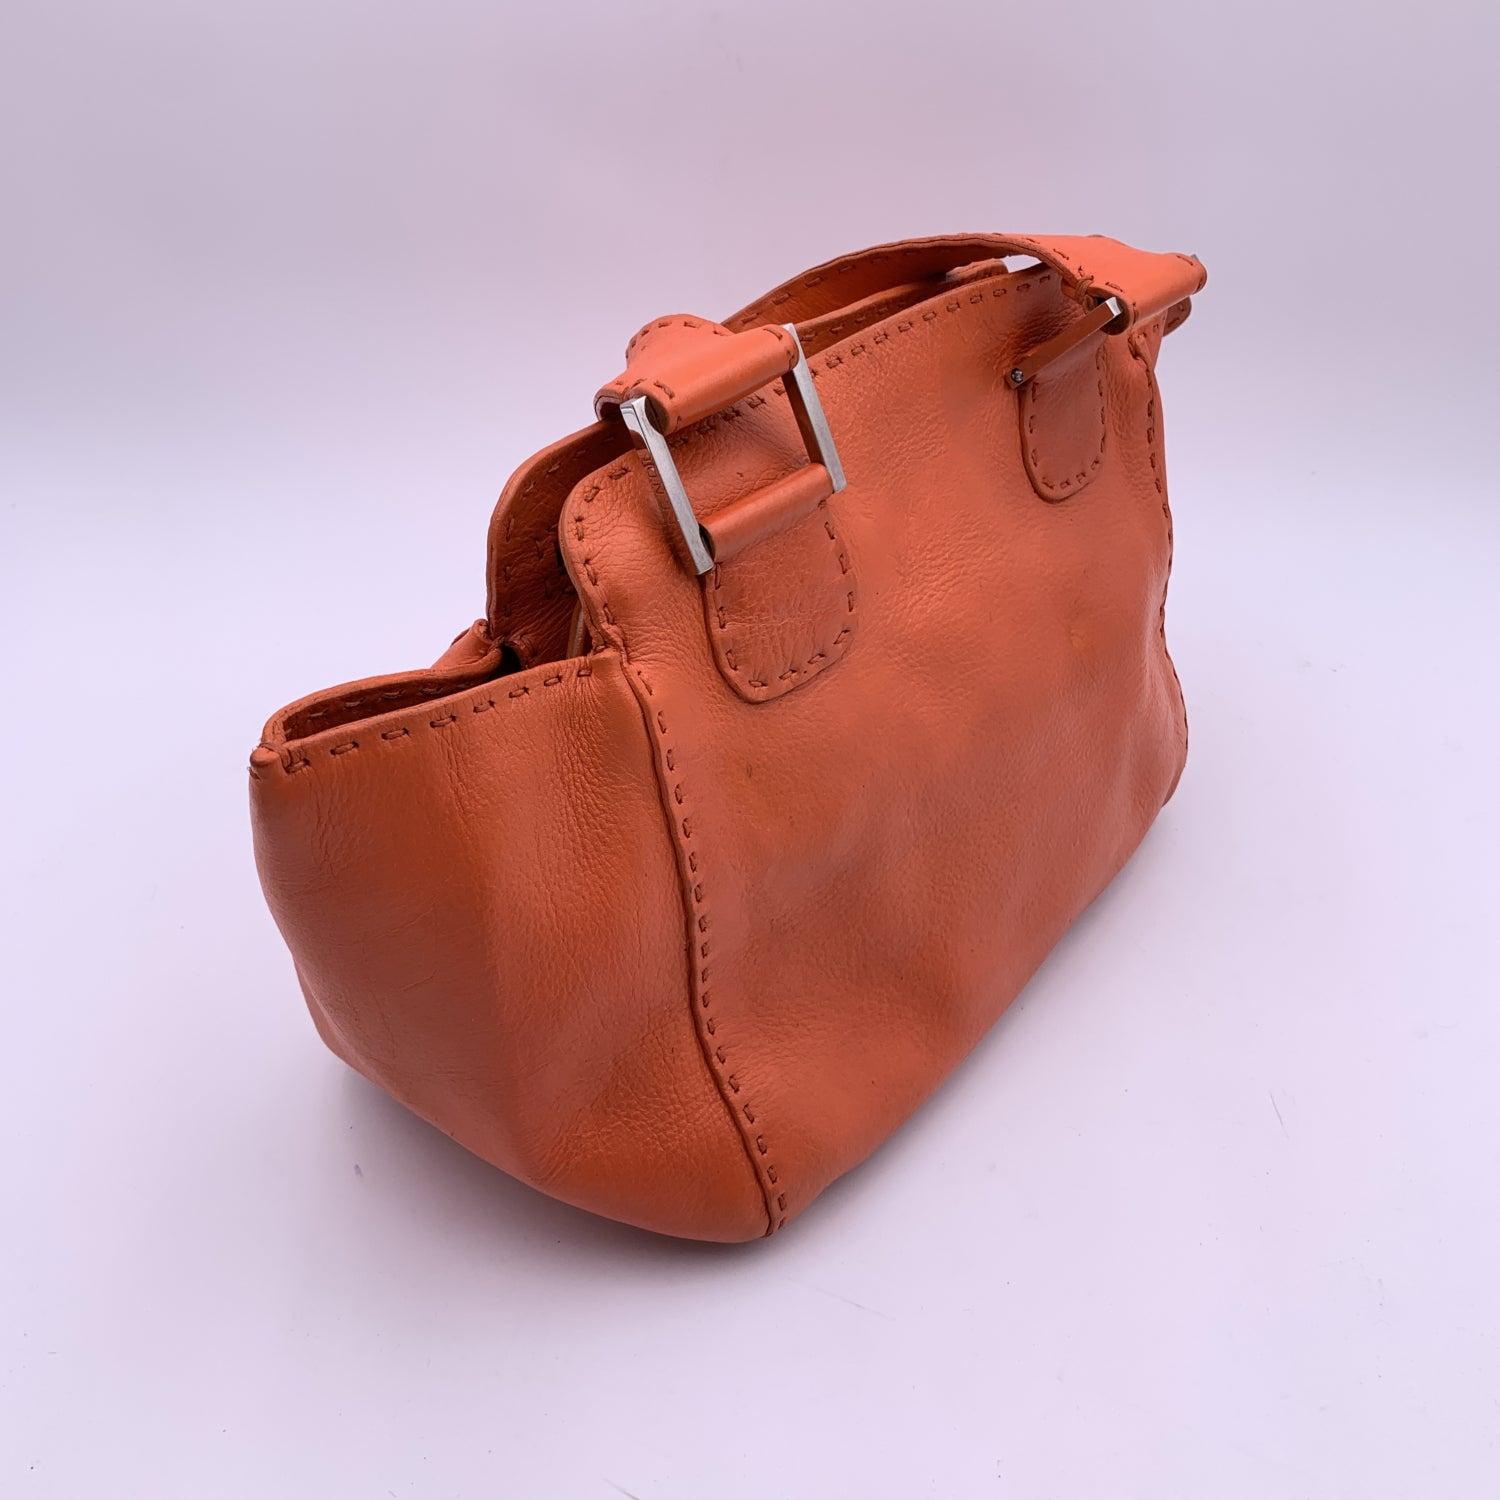 Fendi Selleria Orange Leather Tote Small Handbag Satchel 1